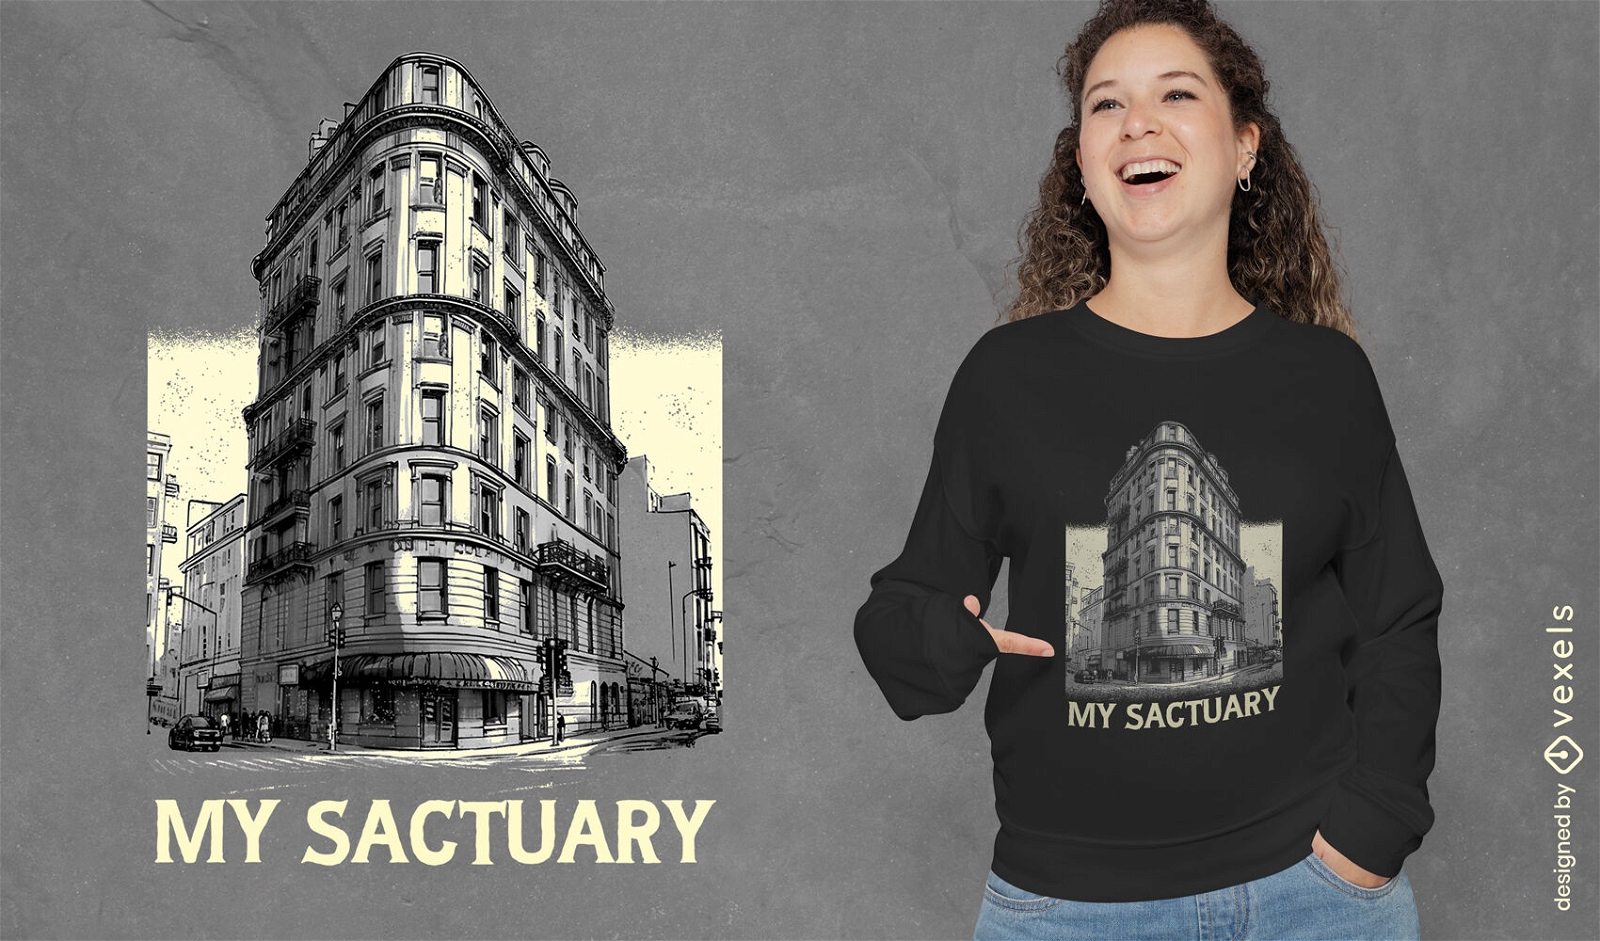 Dise?o de camiseta de edificio de santuario urbano.